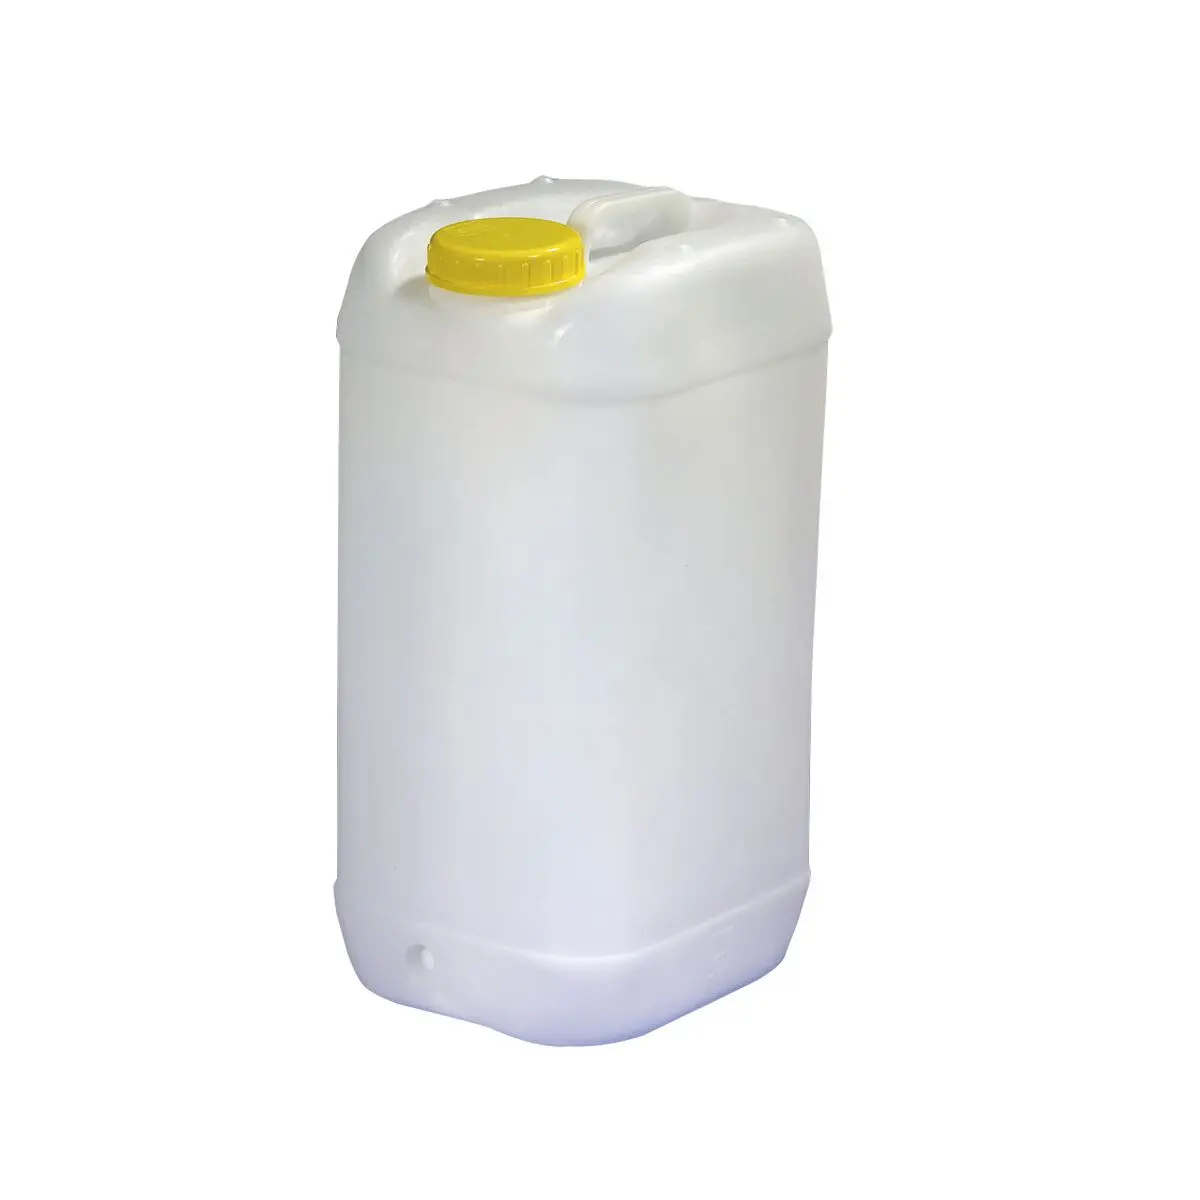 Széles szájú tartály szabvány DIN 96 - 30 liter